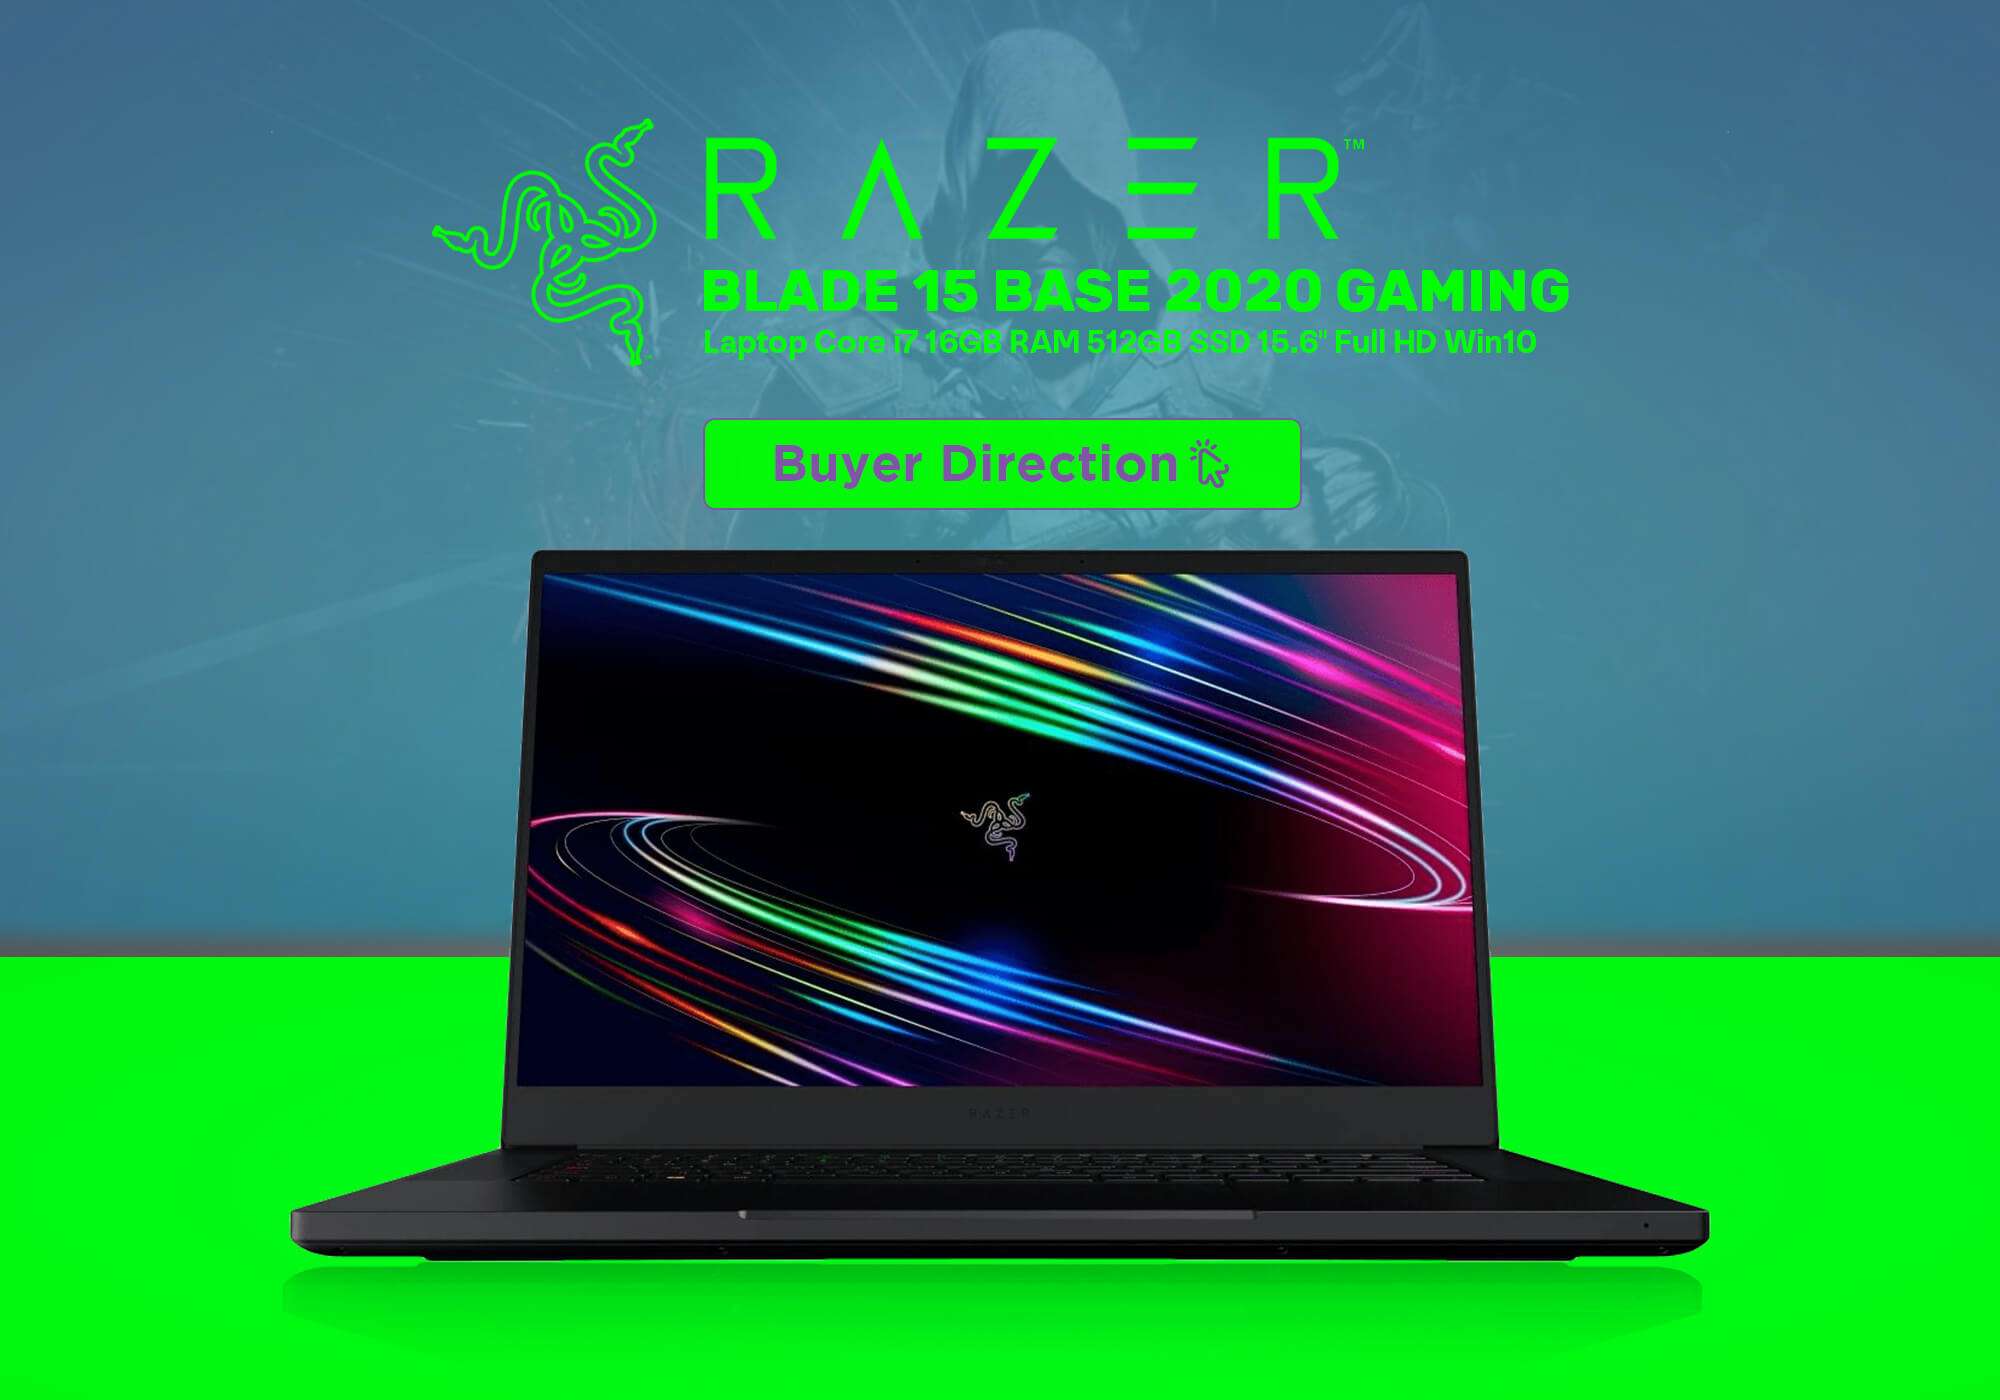 Review: Razer Blade 15 Base Gaming Laptop 2020 15.6" Intel Core i7